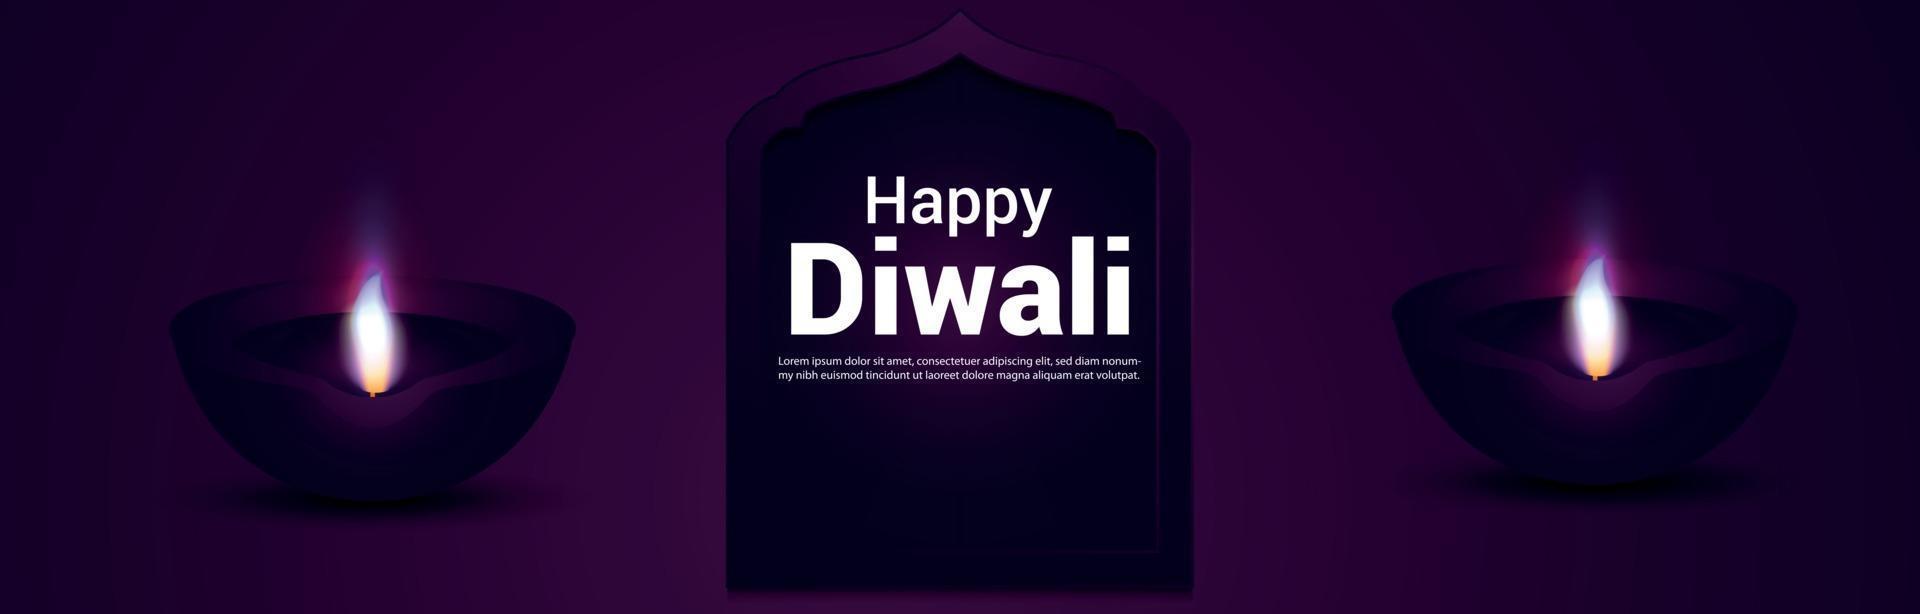 Happy diwali celebration banner or header with vector illustration